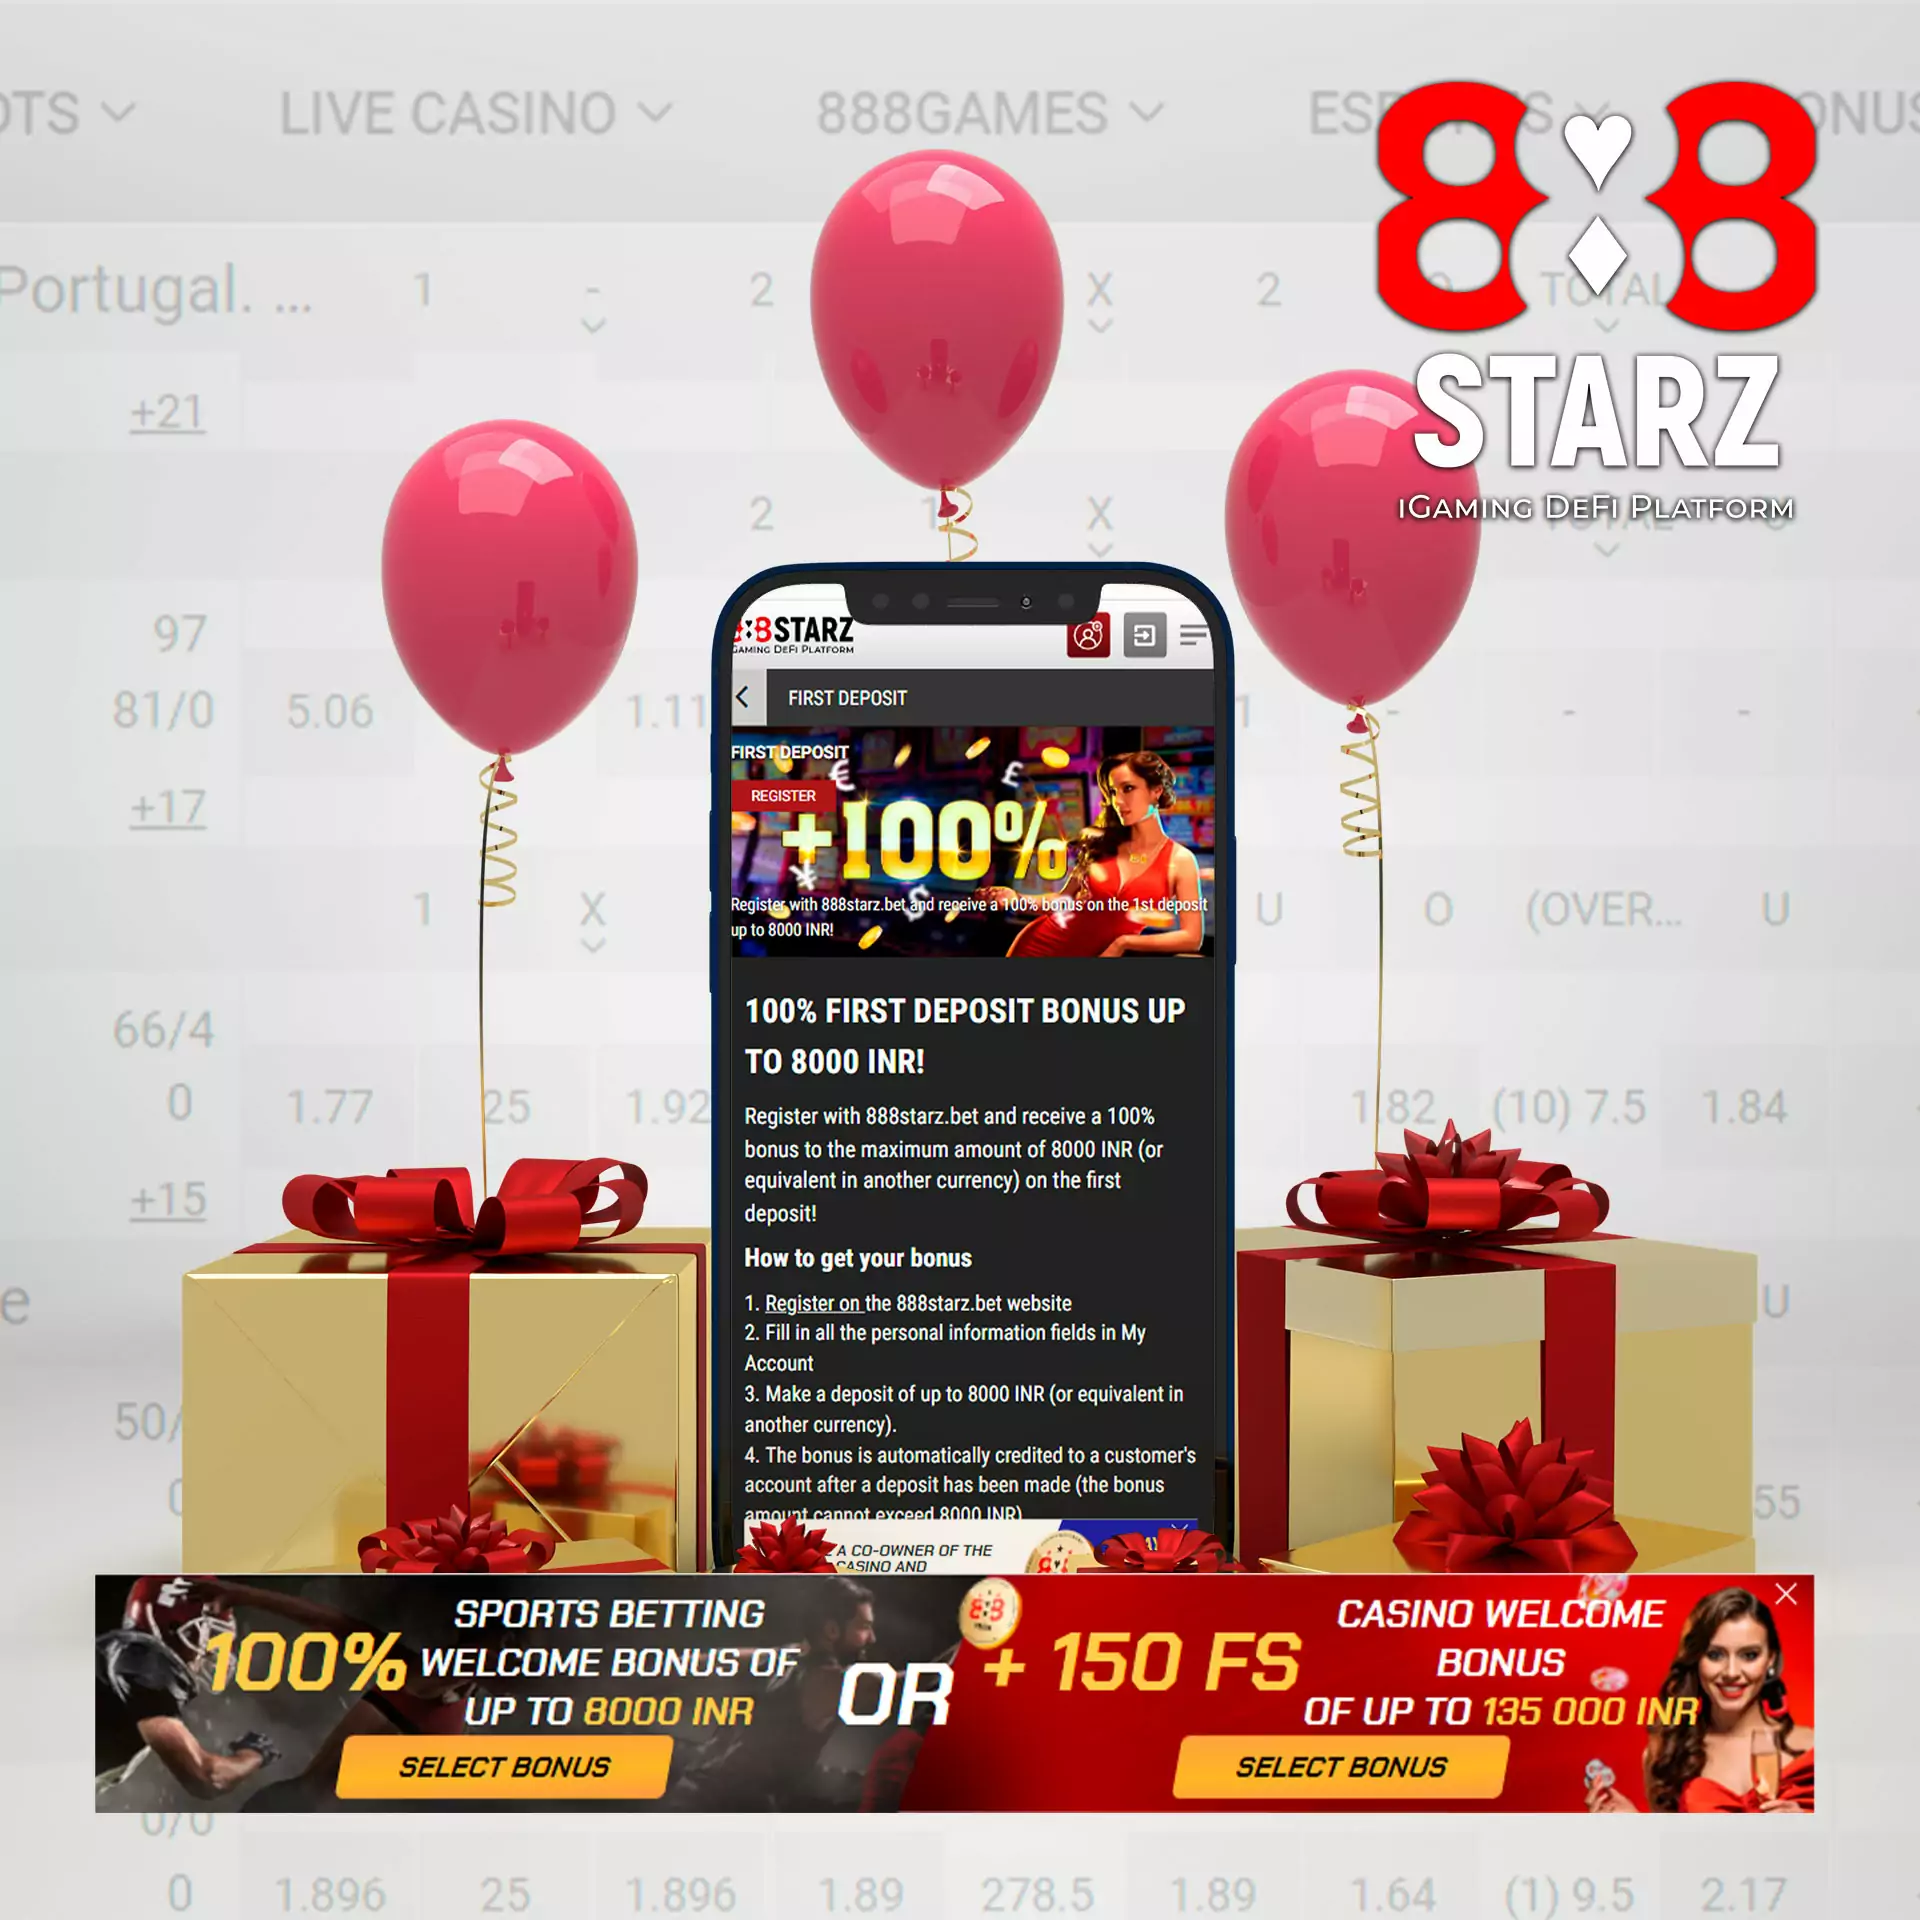 888starz नए उपयोगकर्ताओं को 8,000 रुपये का स्वागत बोनस दे रहा है।